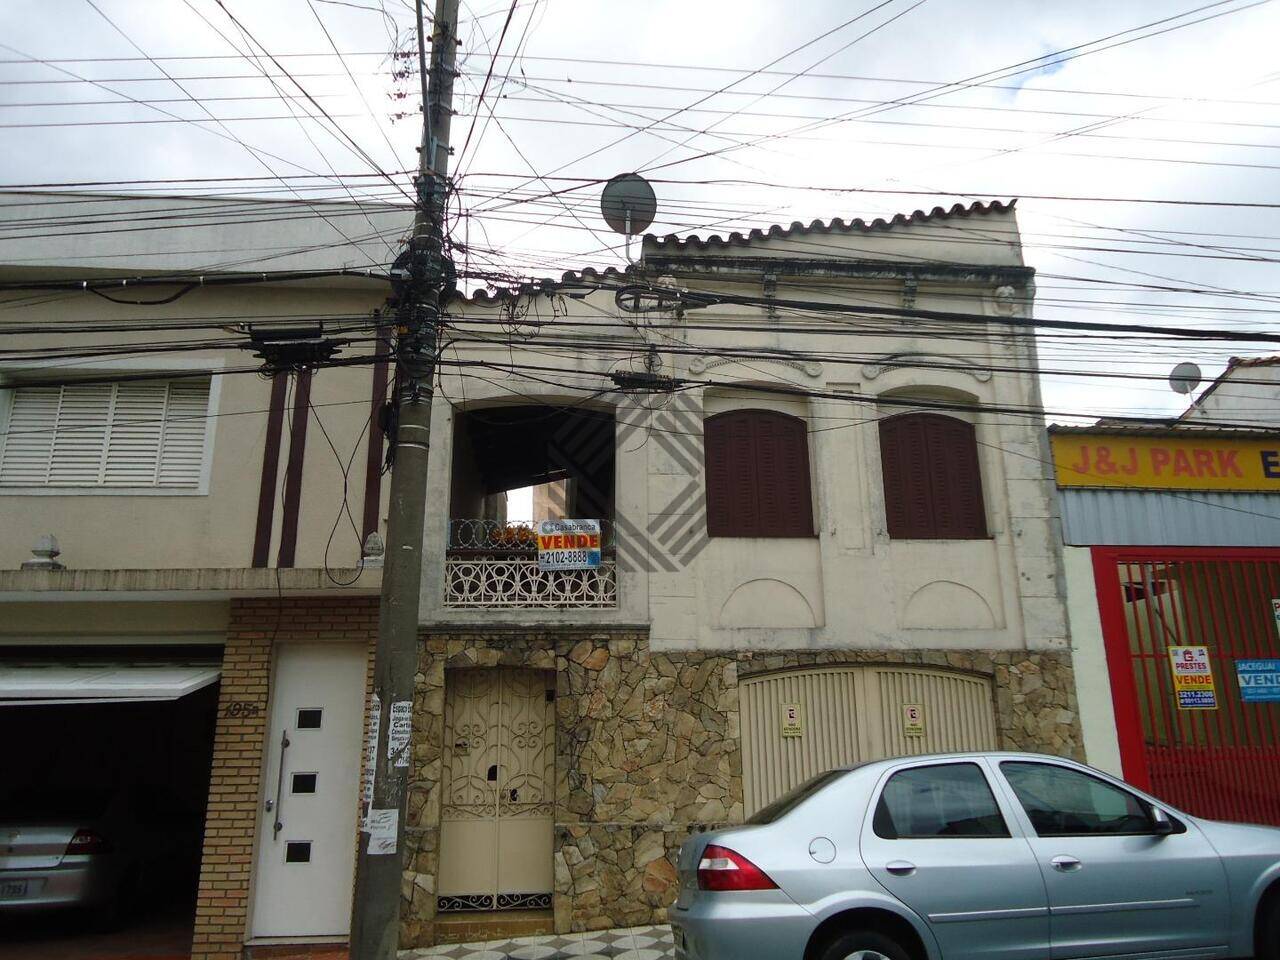 Casa Centro, Sorocaba - SP